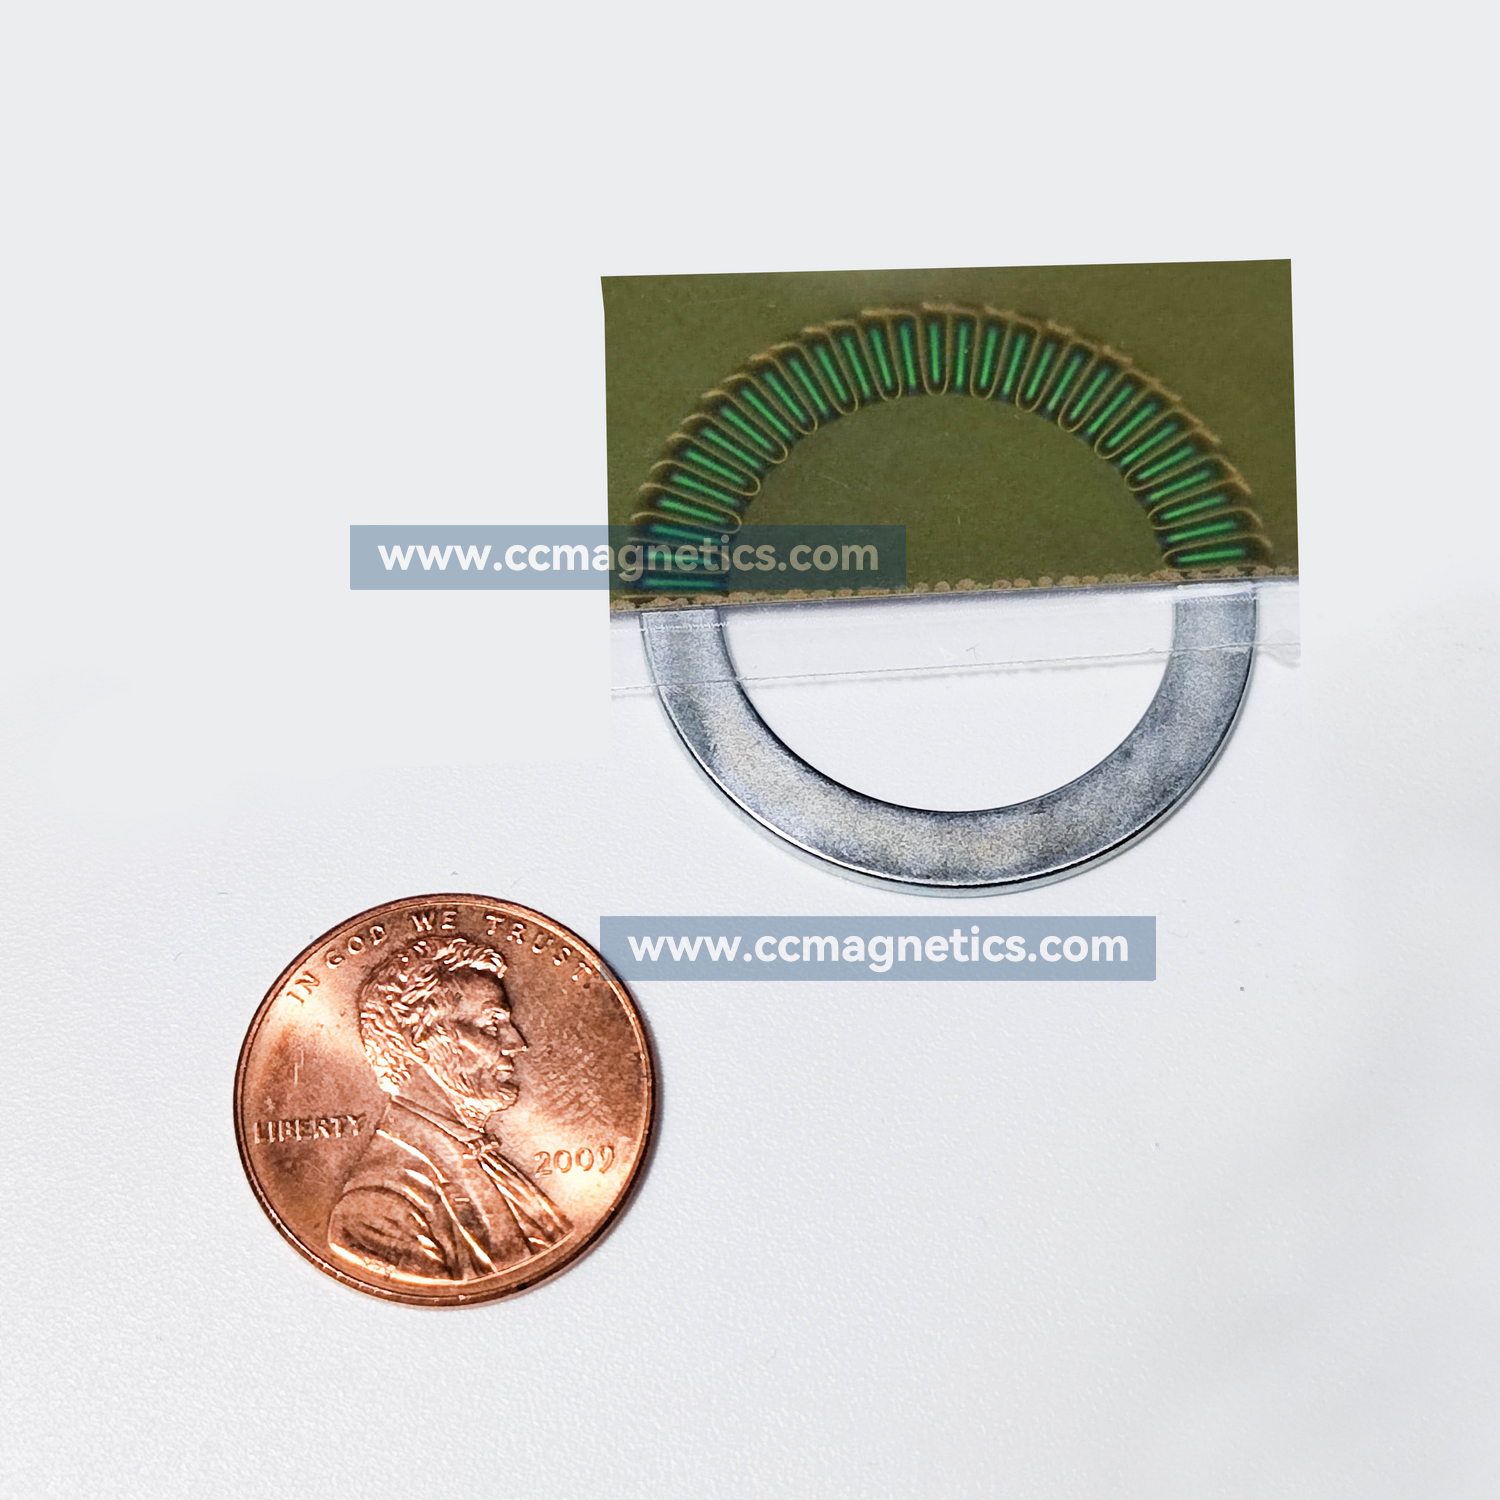 NdFeB Magnetic Rings for Encoder